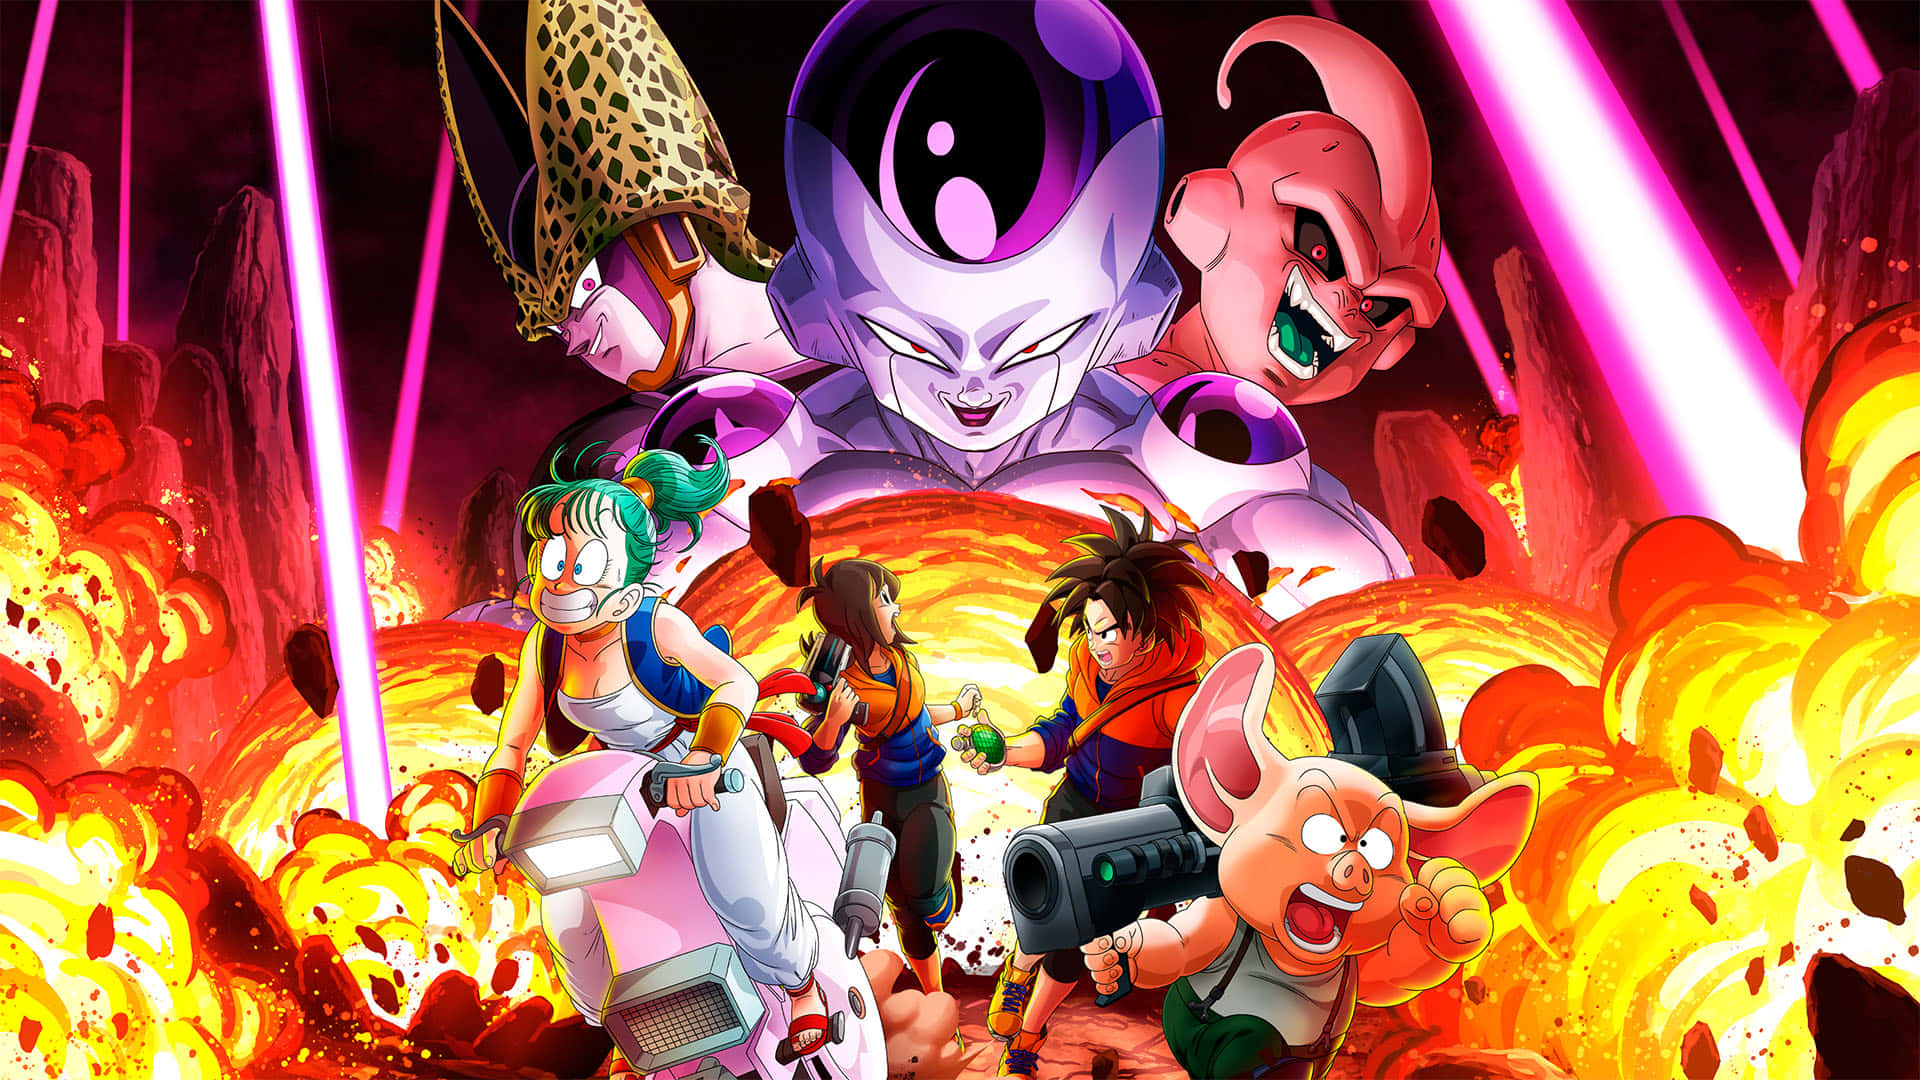 100+] Dragon Ball Super Manga Wallpapers